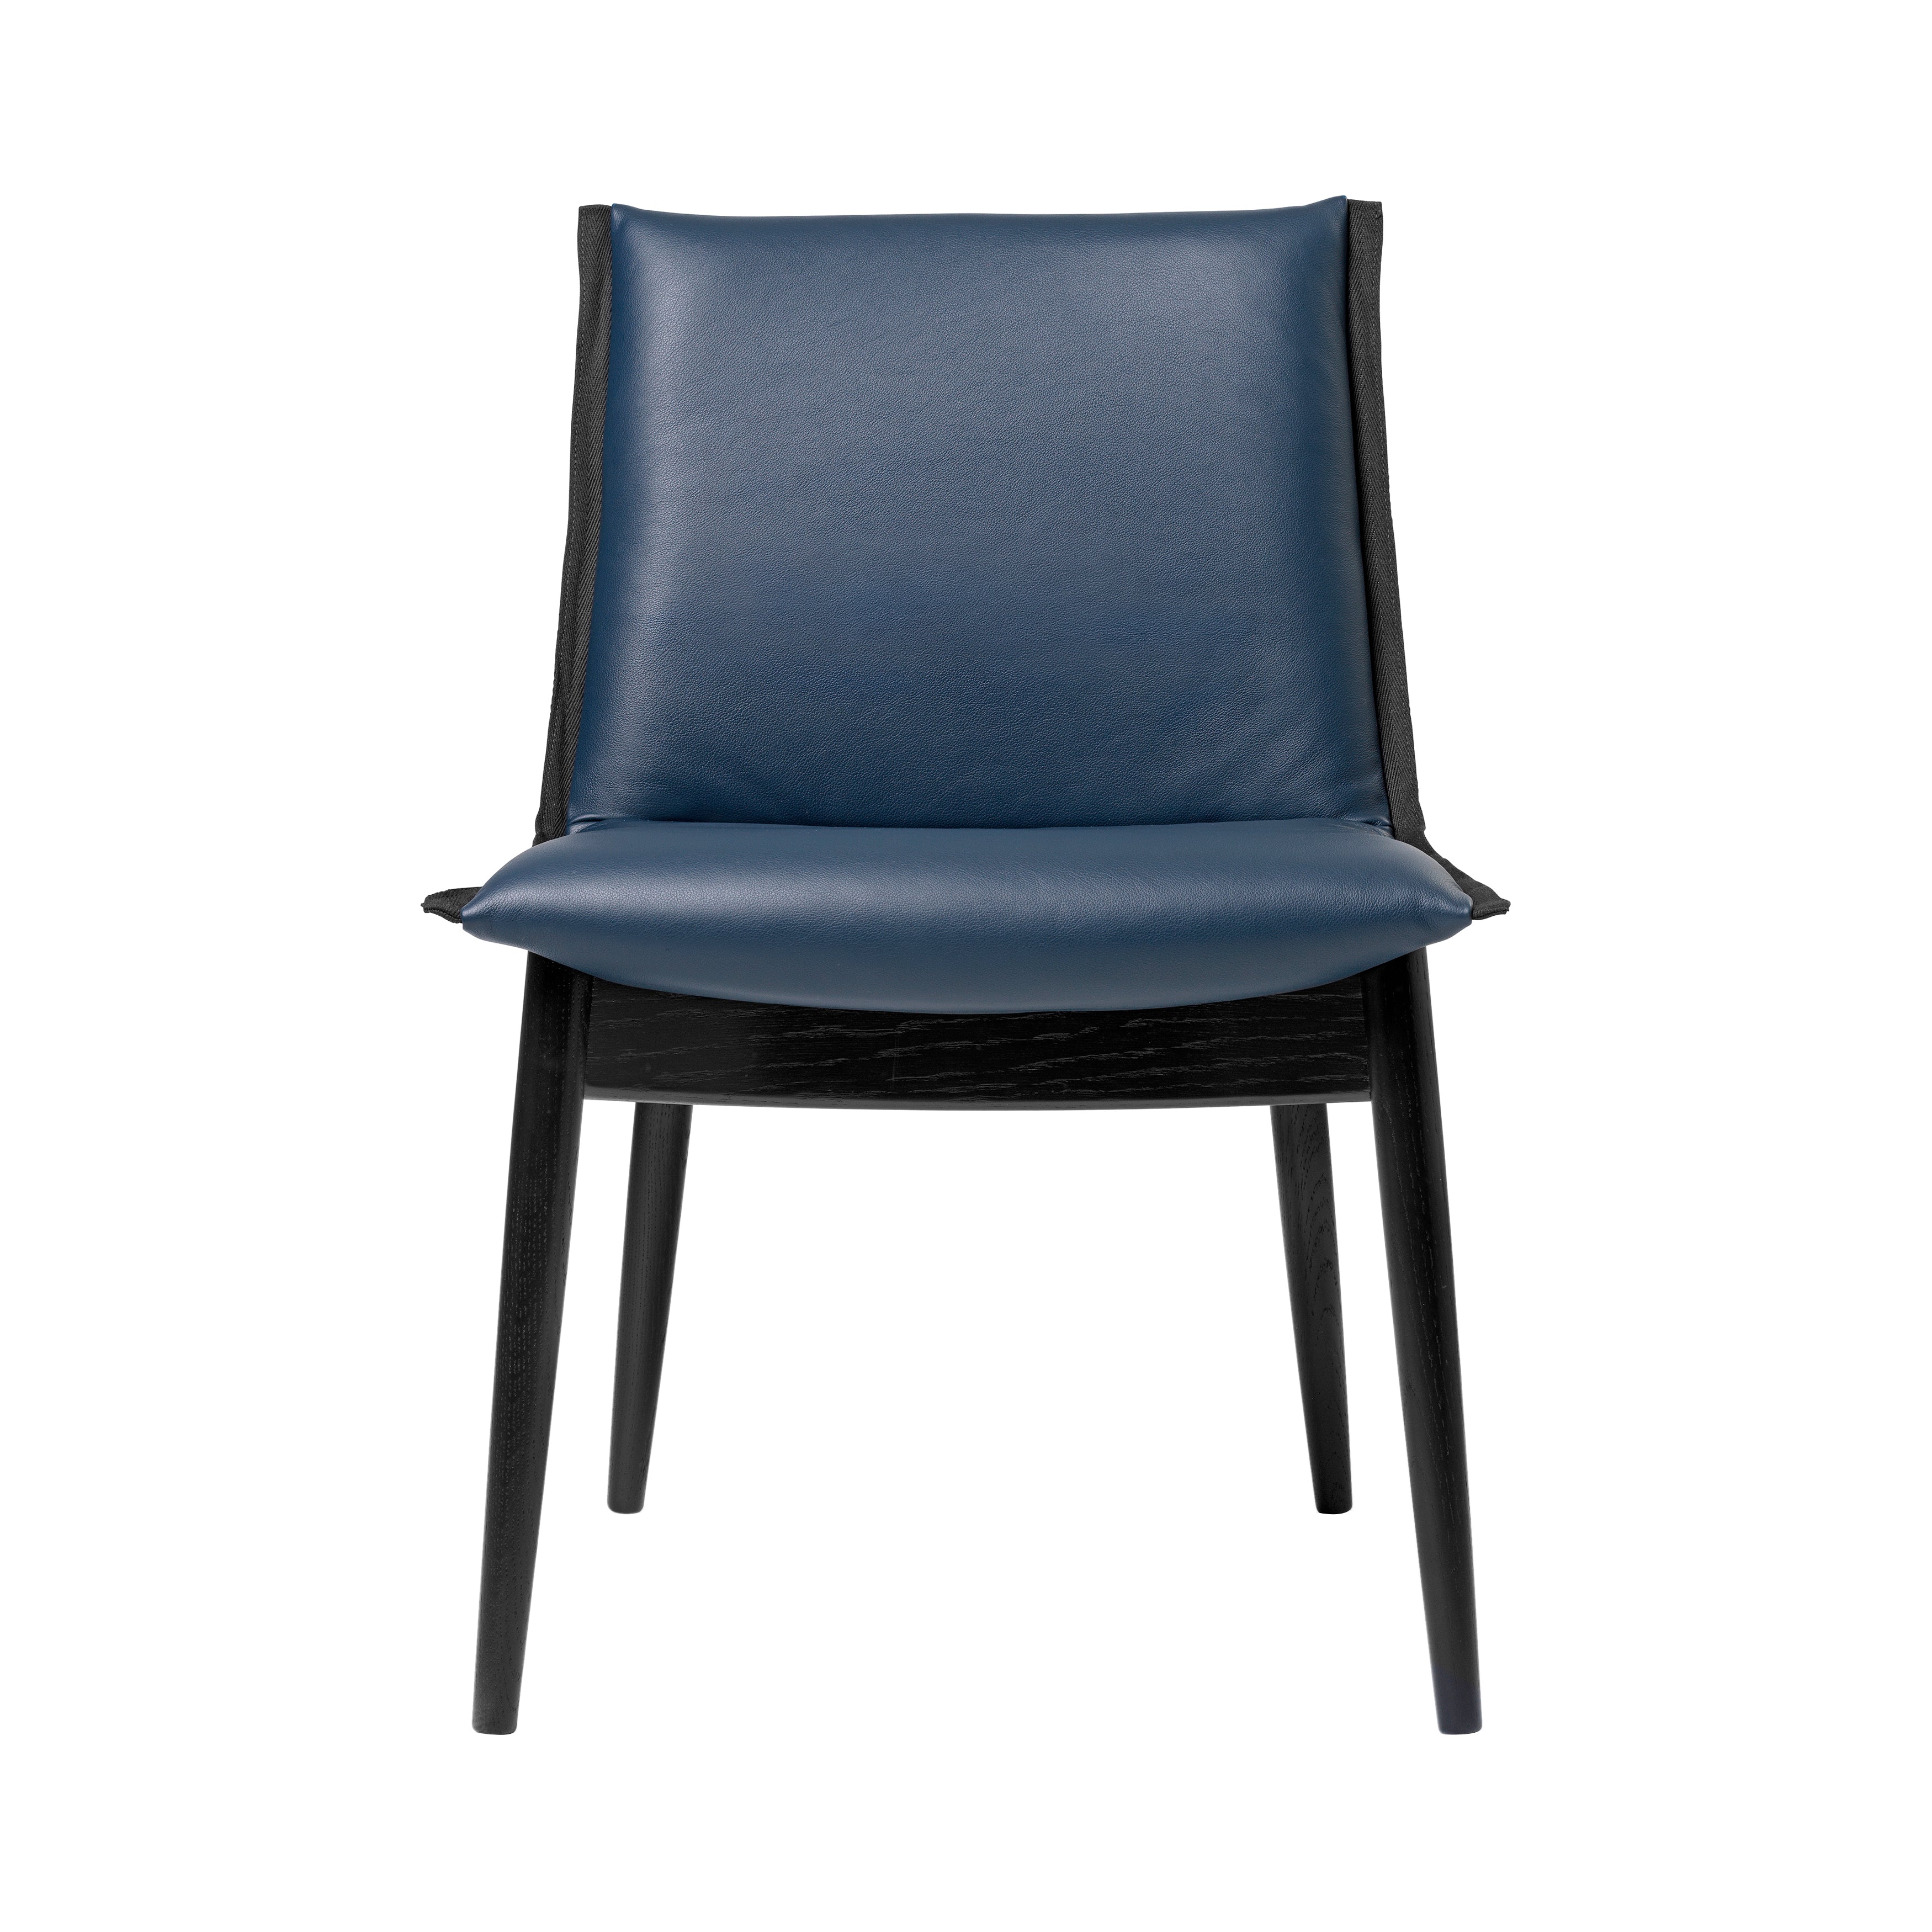 E004 Embrace Chair: Black Edging Strip + Black Oak